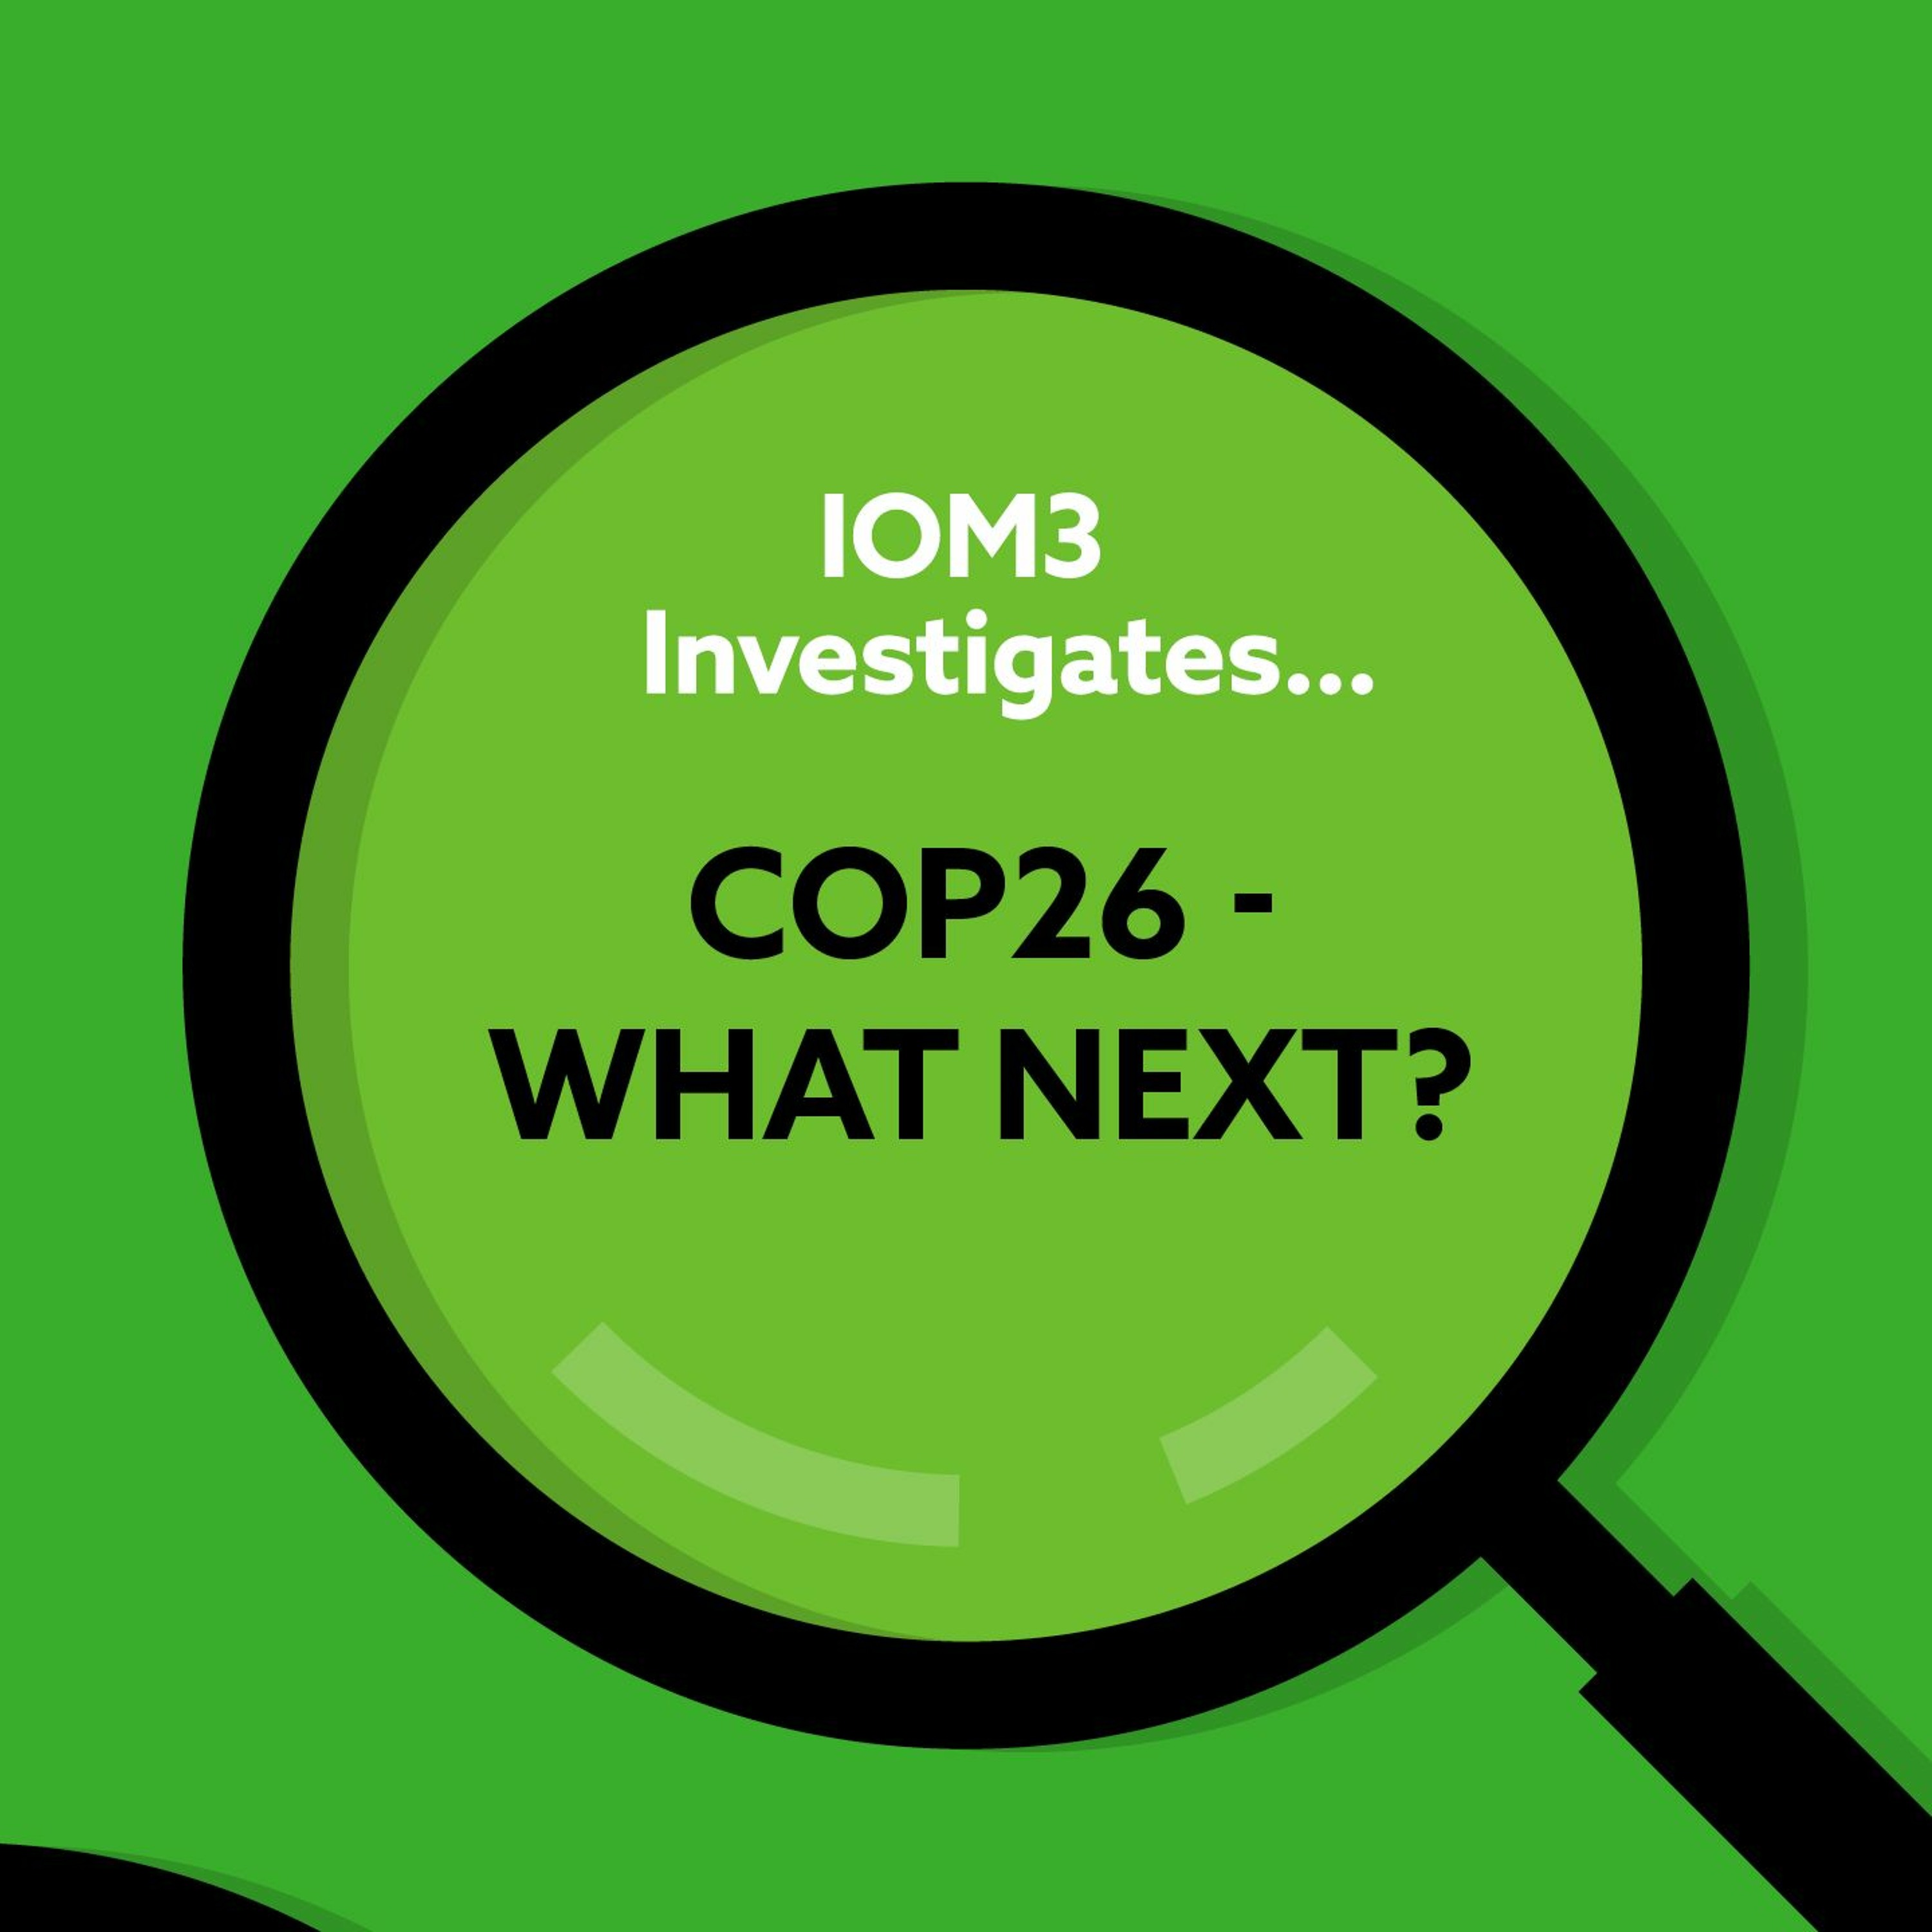 IOM3 Investigates... COP26